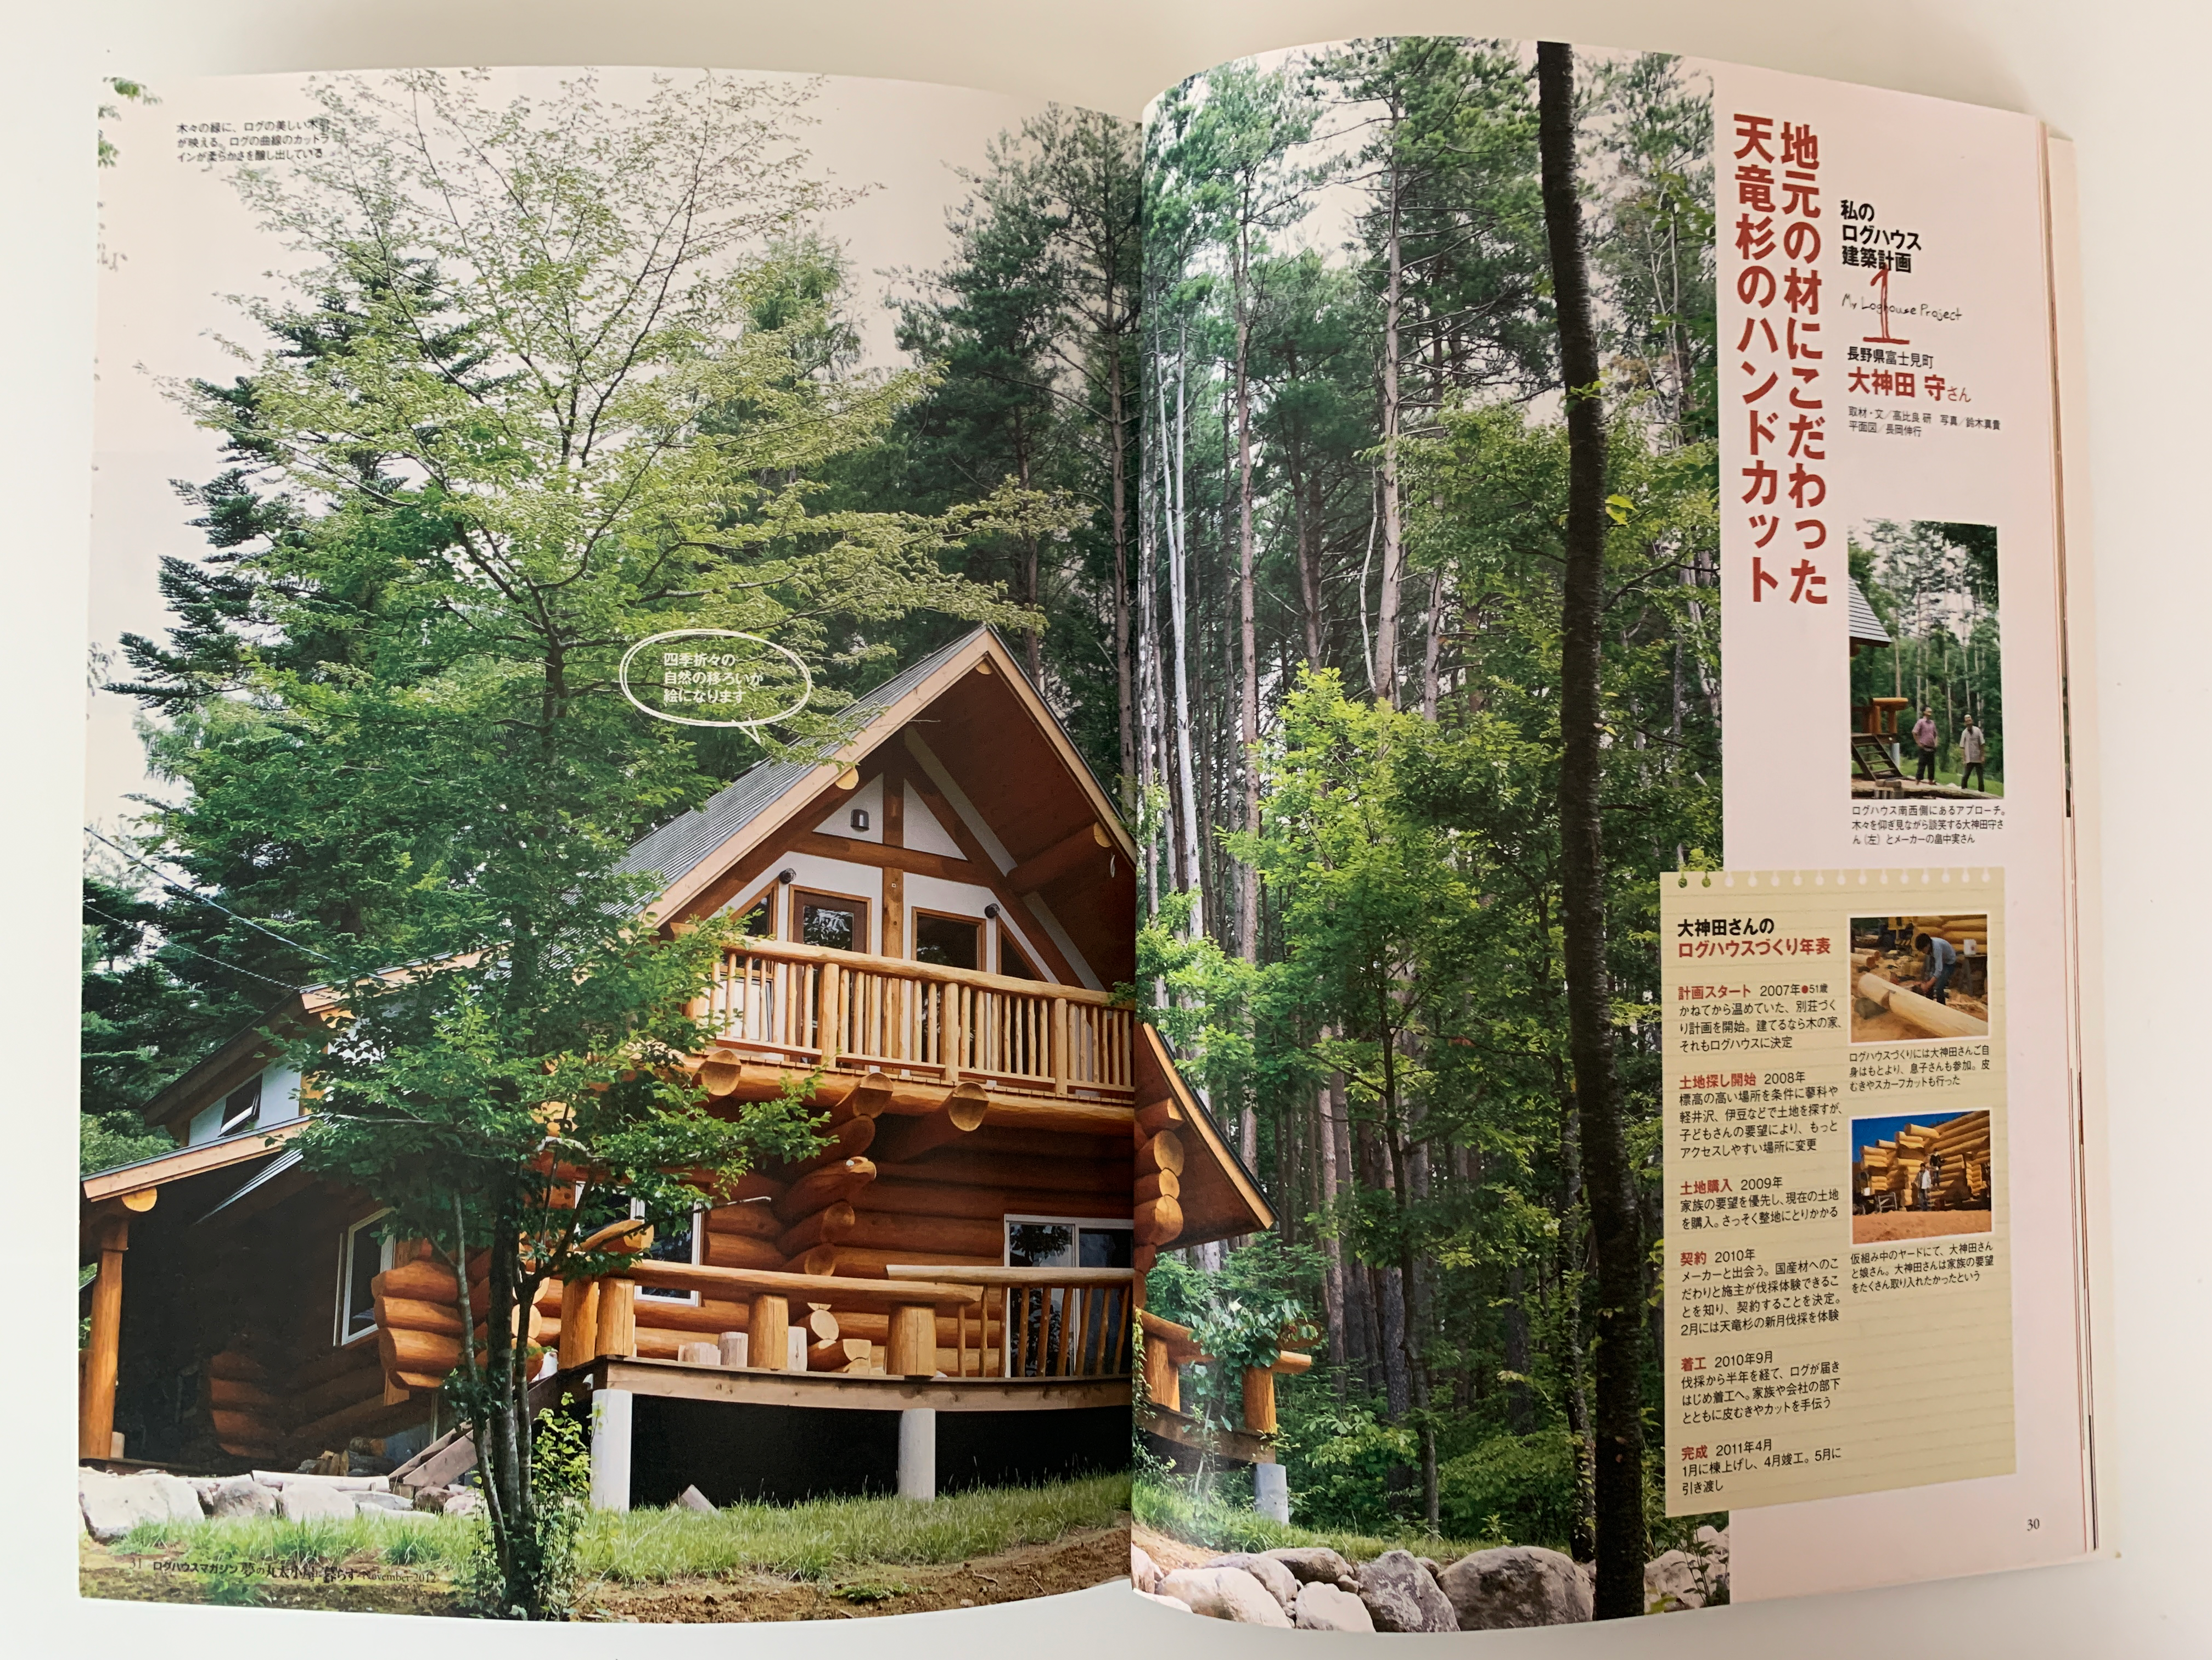 『夢の丸太小屋に暮らす LOG HOUSE MAGAZINE』「私のログハウス建築計画①地元の材にこだわった天竜杉のハンドカット」として、アシストが設計・施工したハンドカットログハウスが掲載 